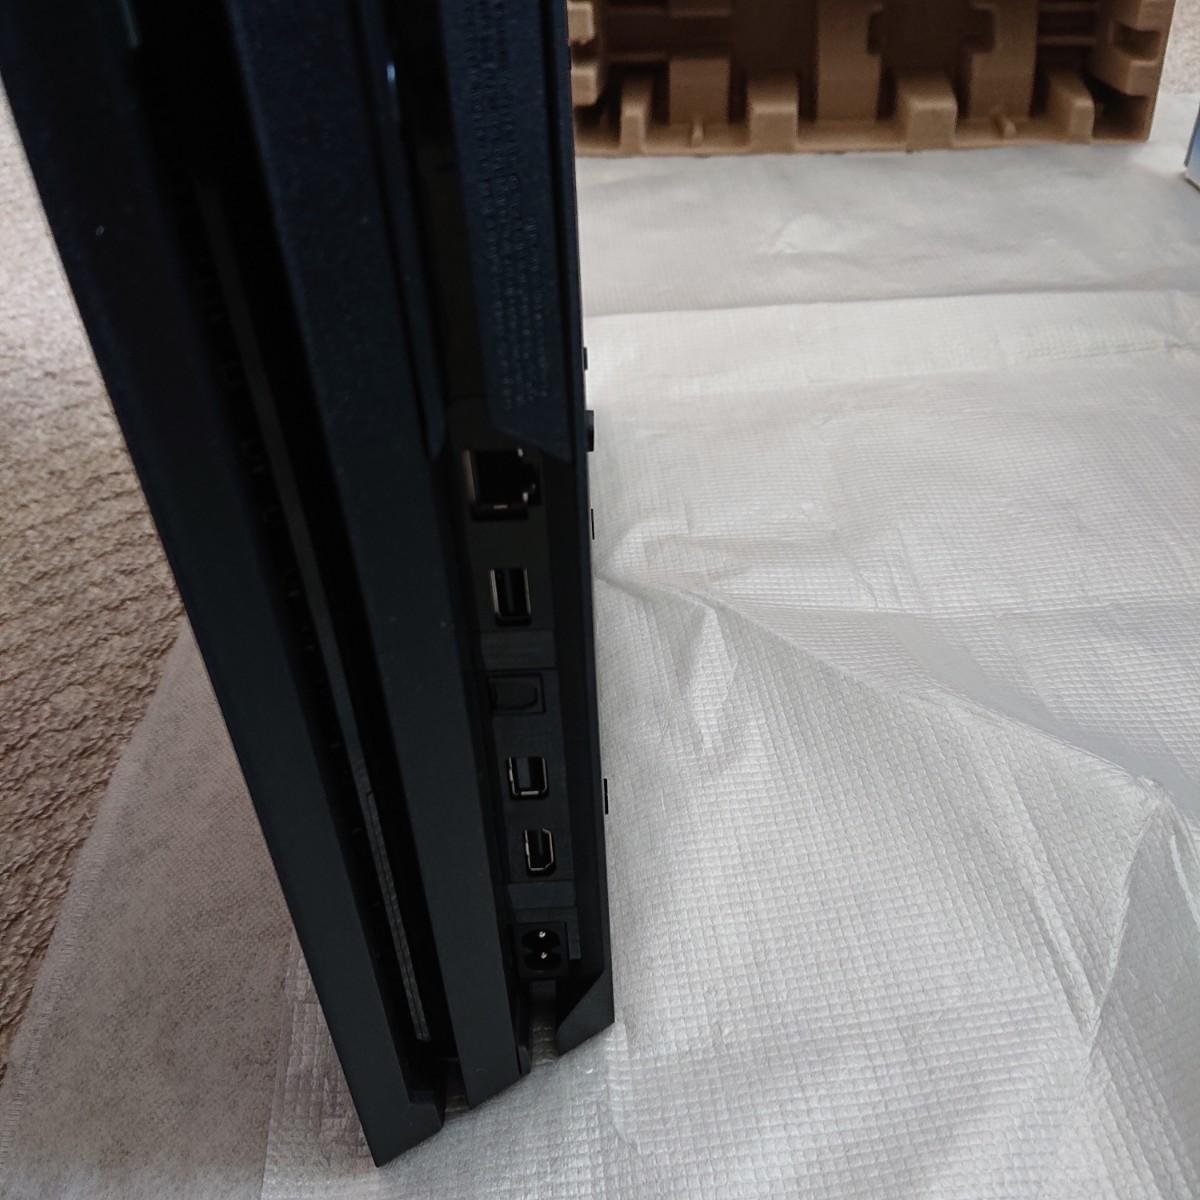 新品・送料無料 SONY PS4本体 CUH-7200BB01 Pro PlayStation4 その他